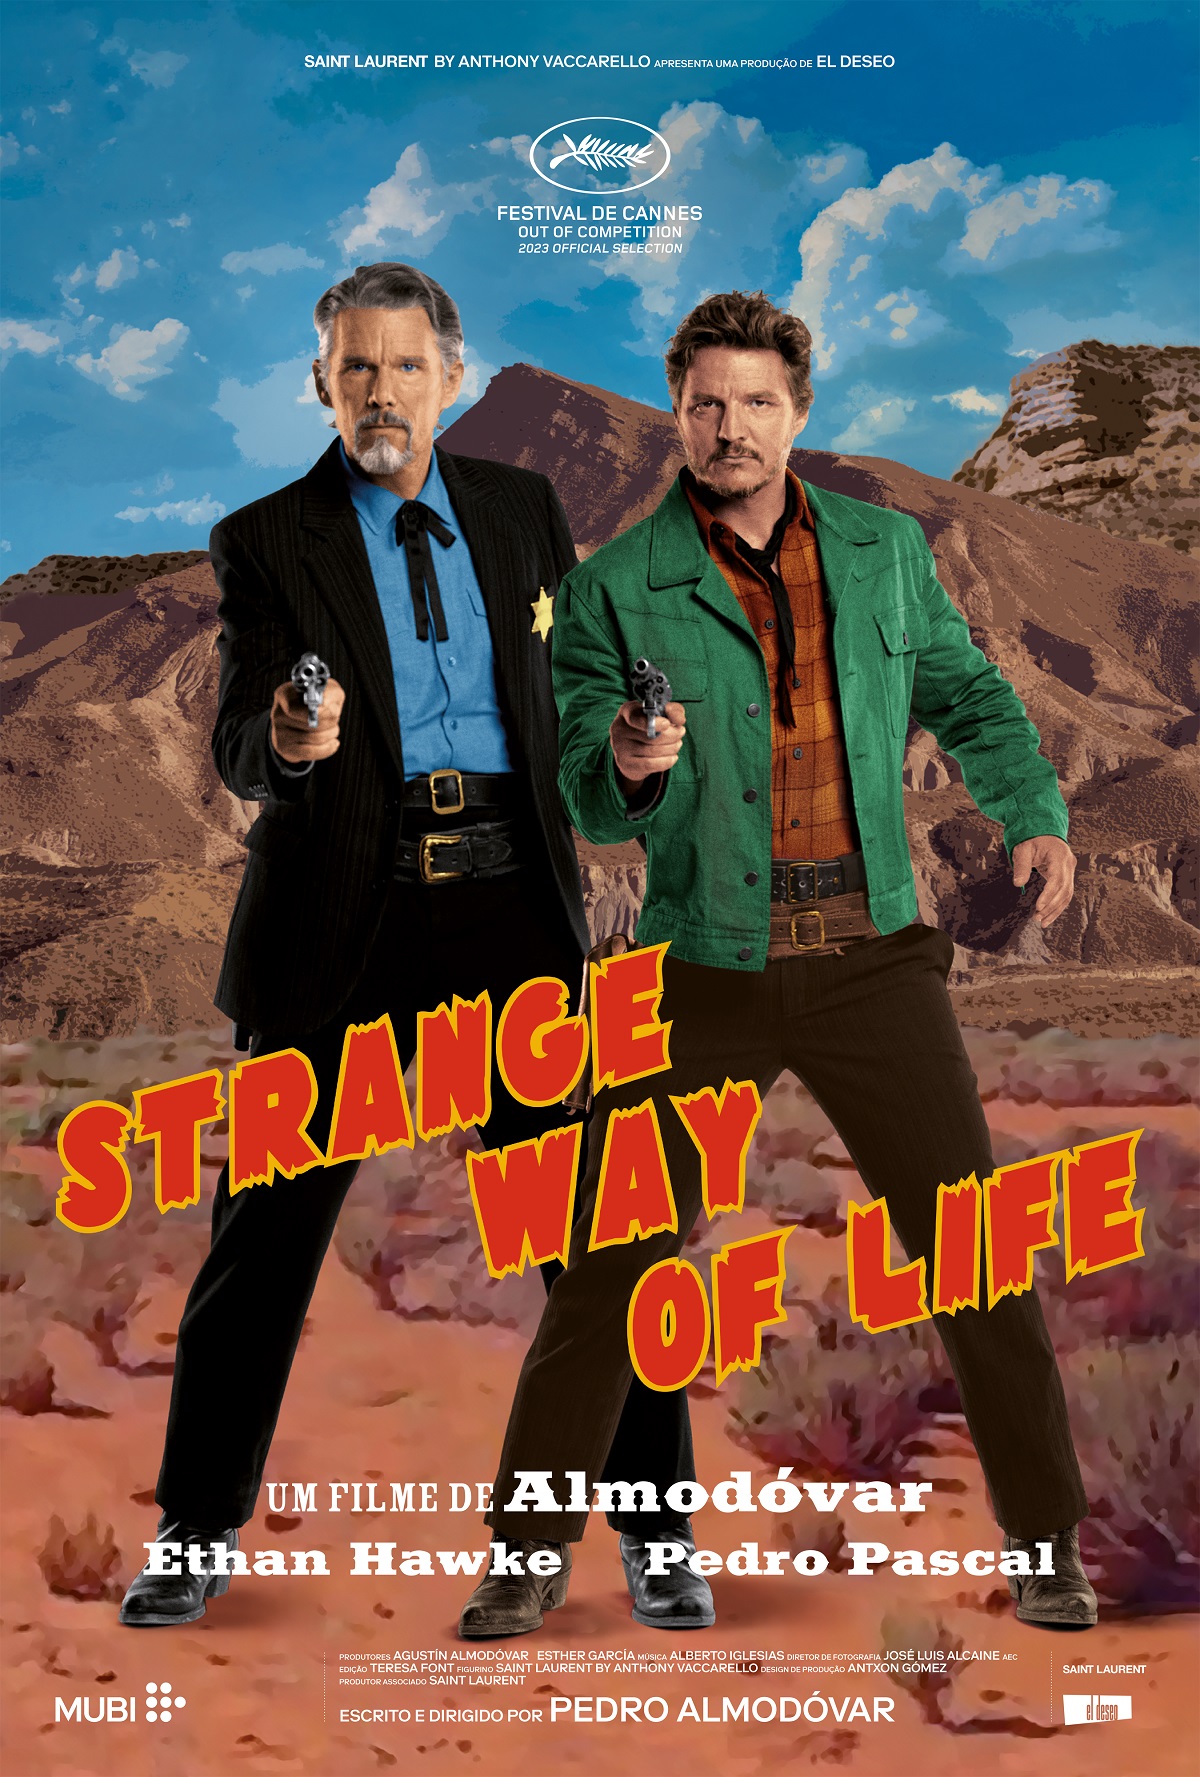 MUBI anuncia lançamento de "Strange Way of Life", curta gay de Almodóvar com Ethan Hawke e Pedro Pascal (Foto: Divulgação/El Deseo/MUBI)